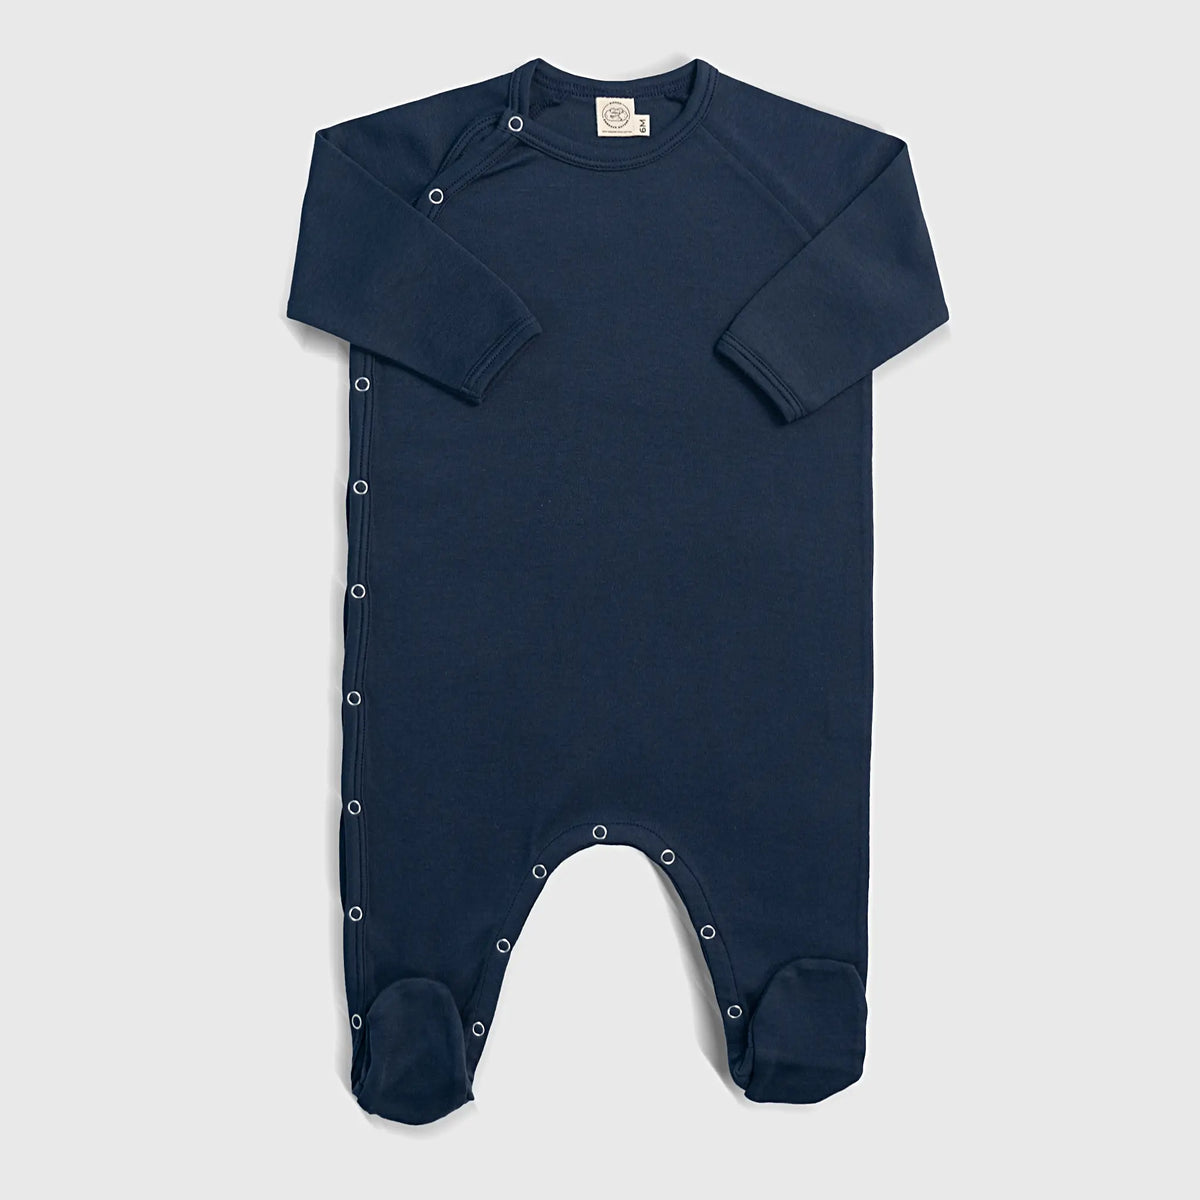 babys versatile design footie pajamas color navy blue